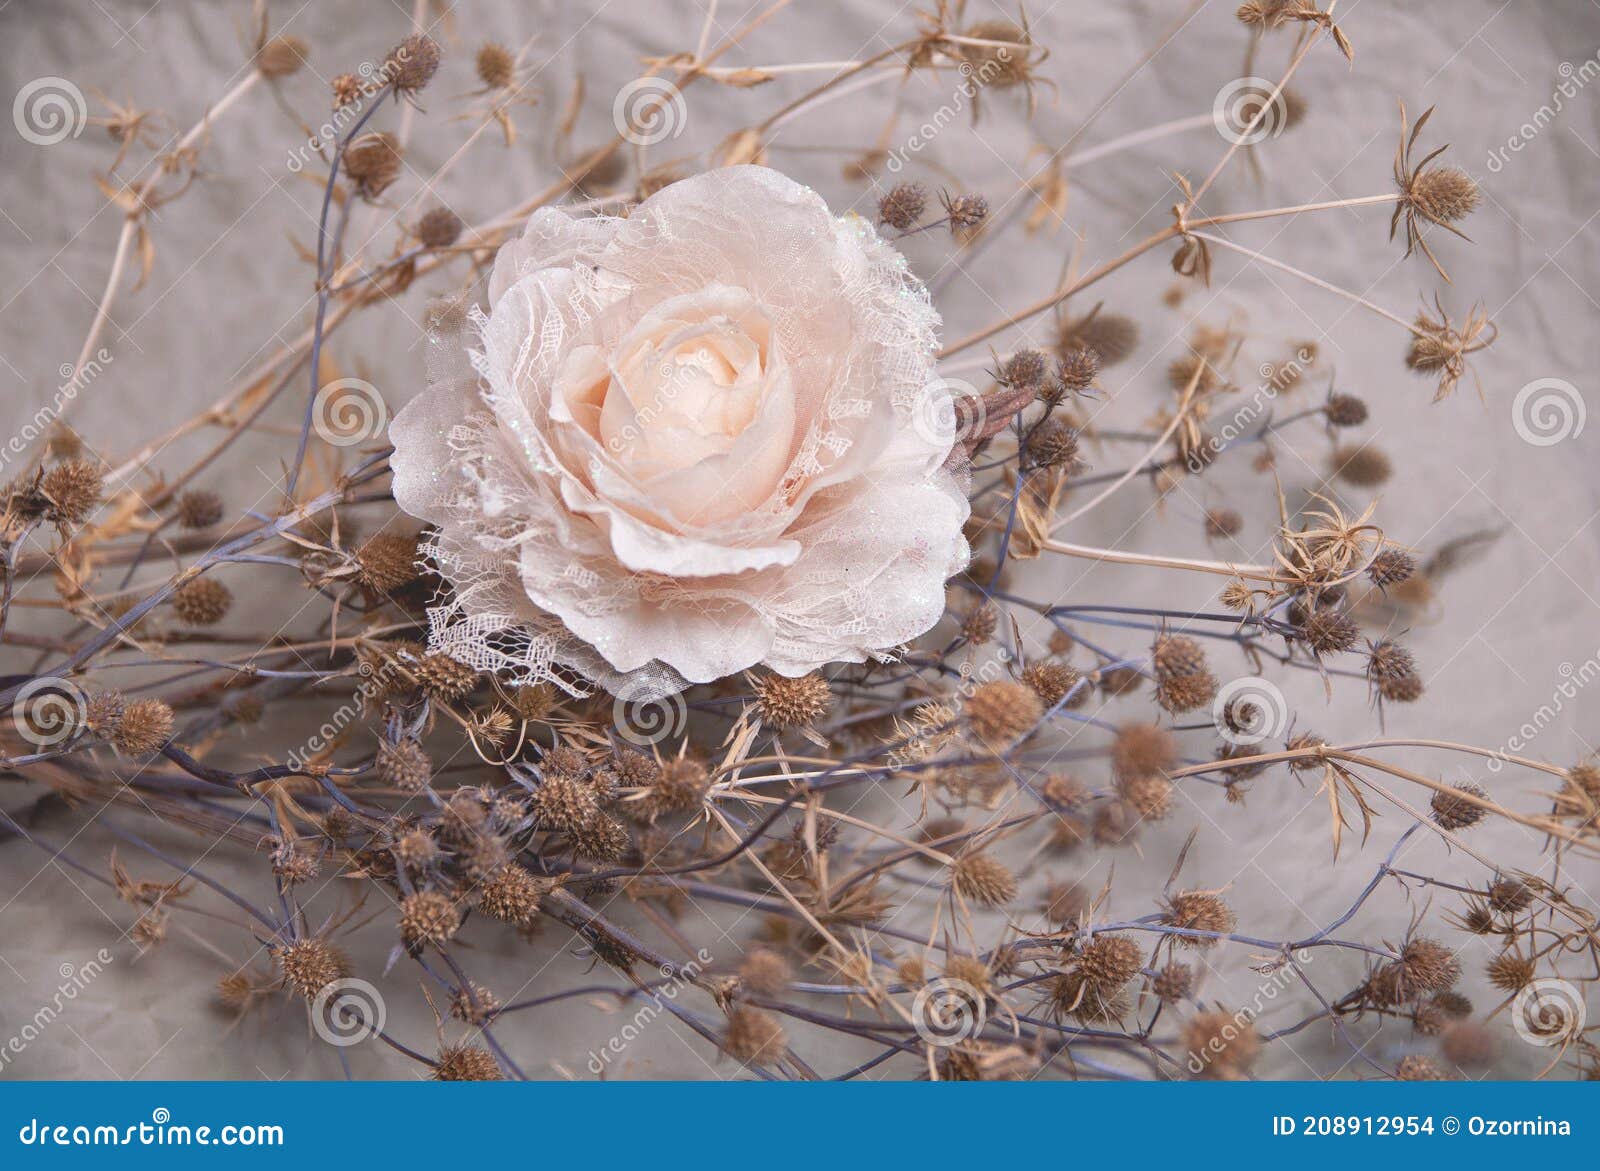 Rosa Artificial En Colores Pastel Con Una Planta De Cardo Foto de archivo -  Imagen de flores, pétalos: 208912954